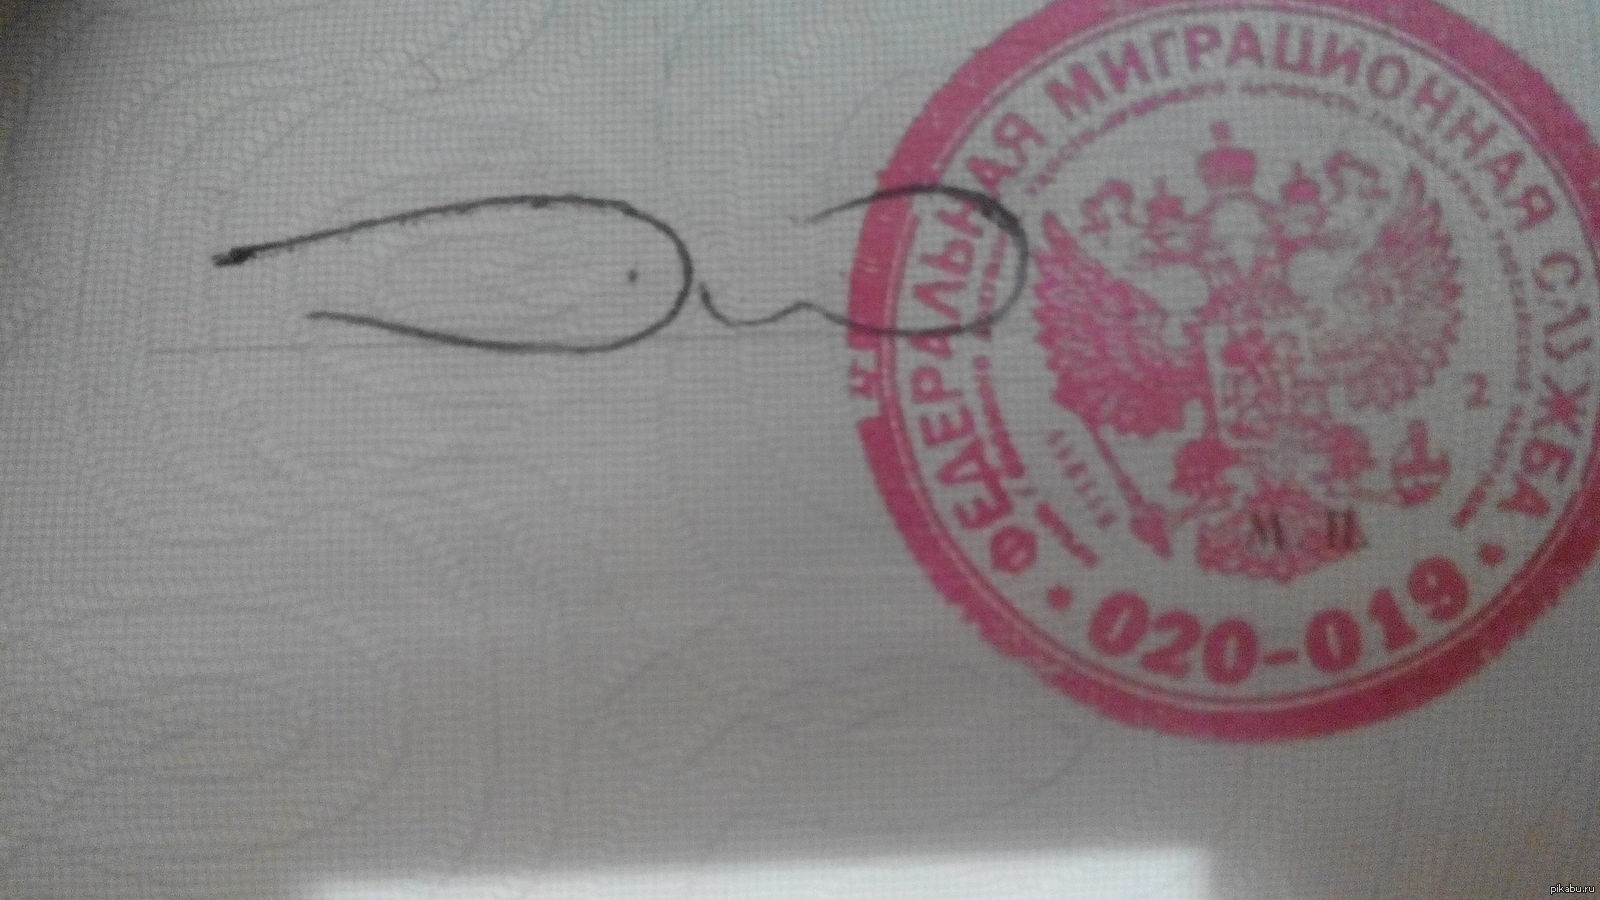 Самые смешные подписи в паспорте